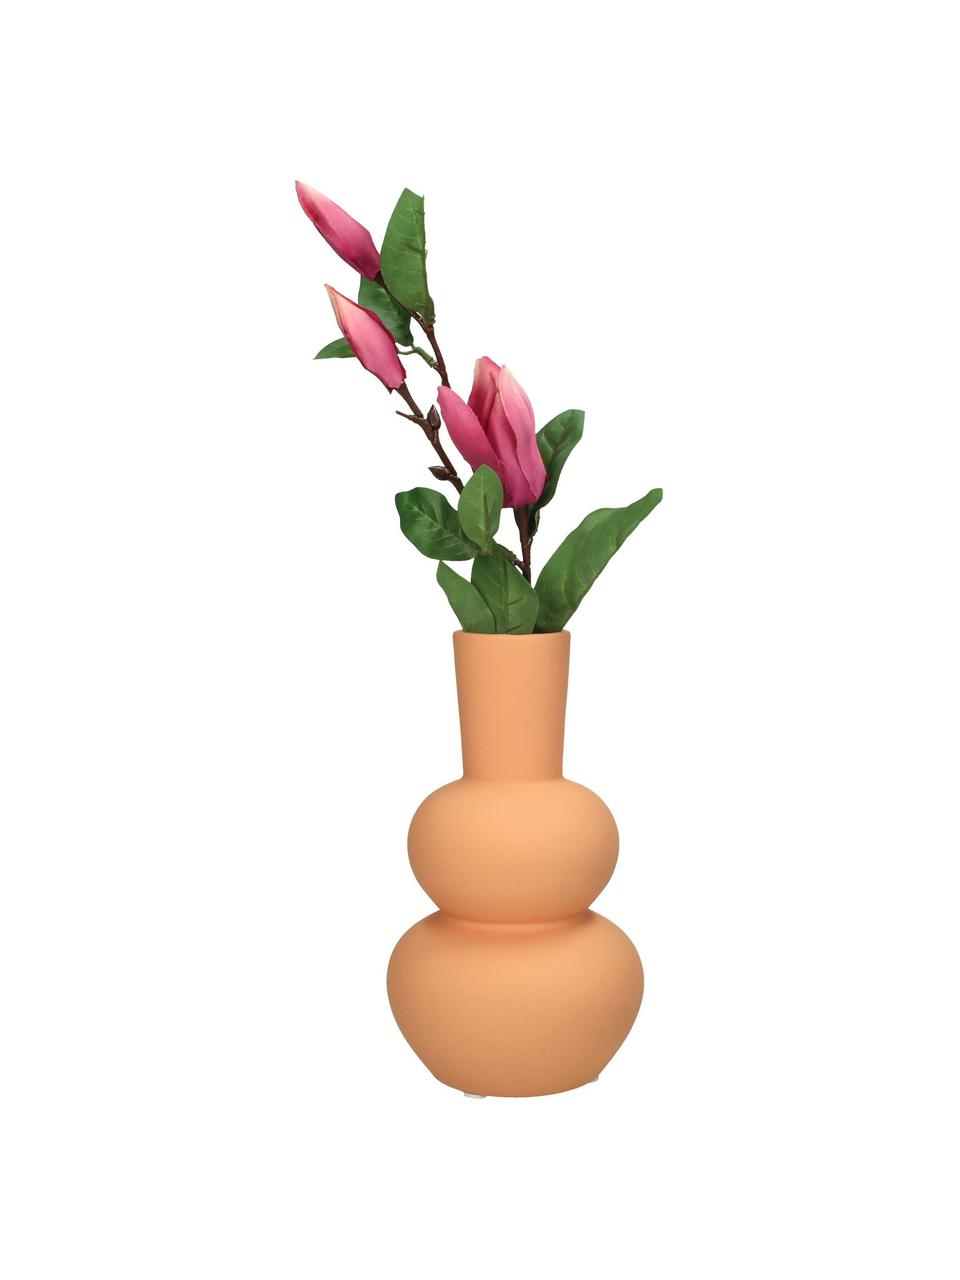 Kameninová váza Eathan, Oranžová